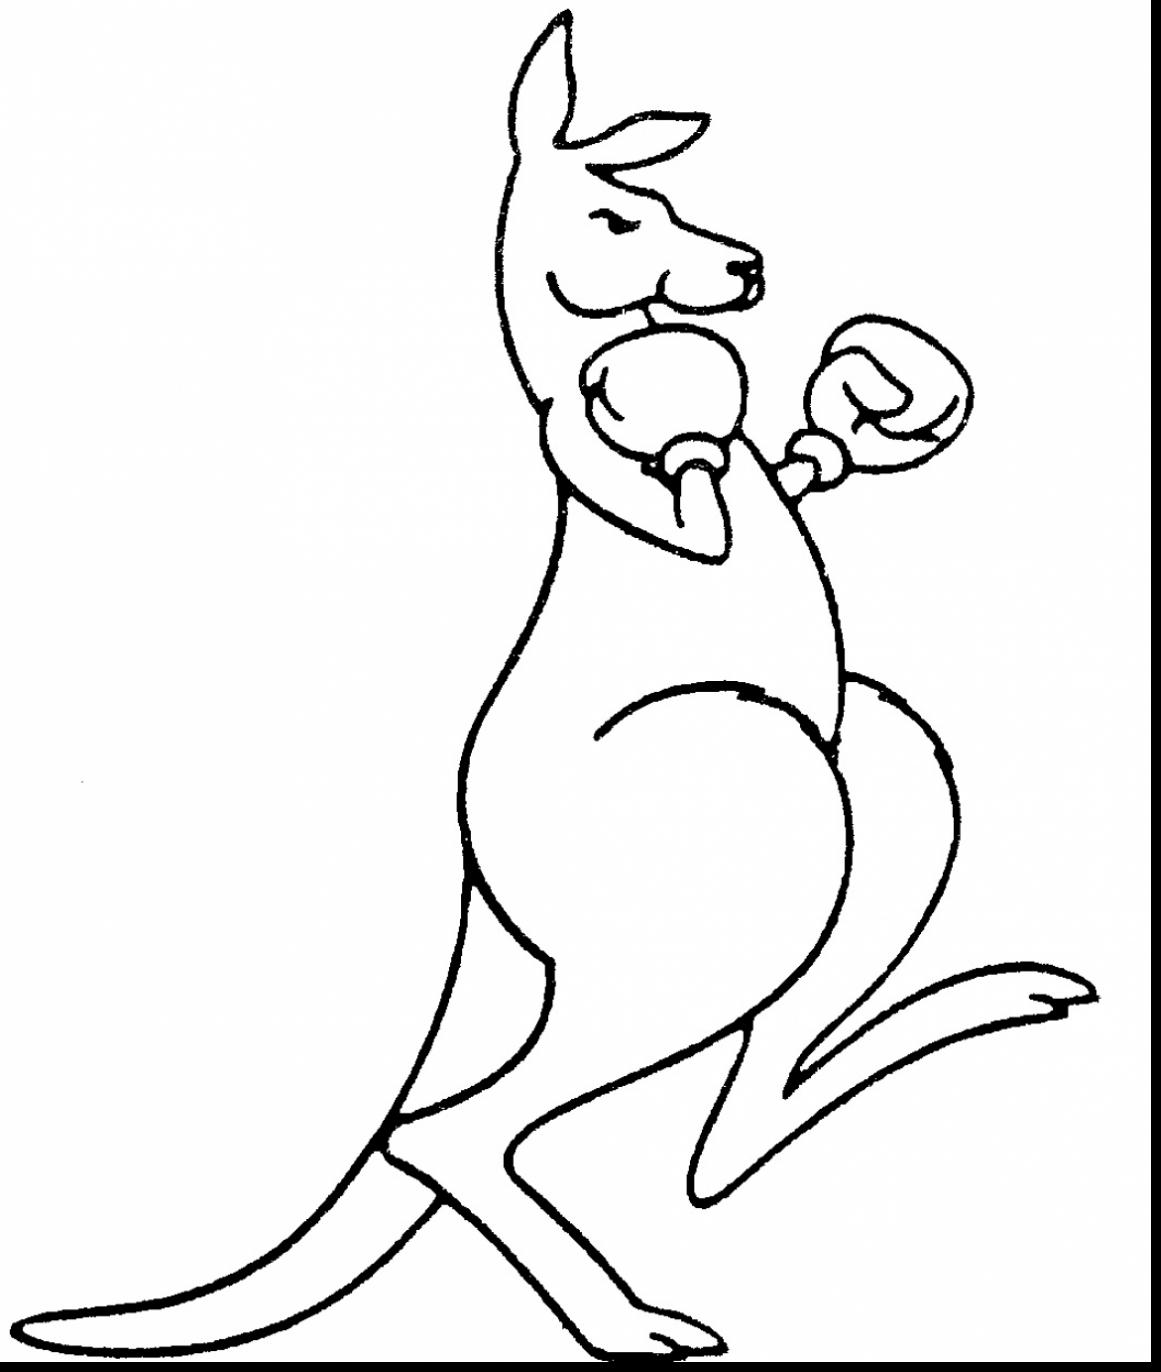 Kangaroo Outline Drawing